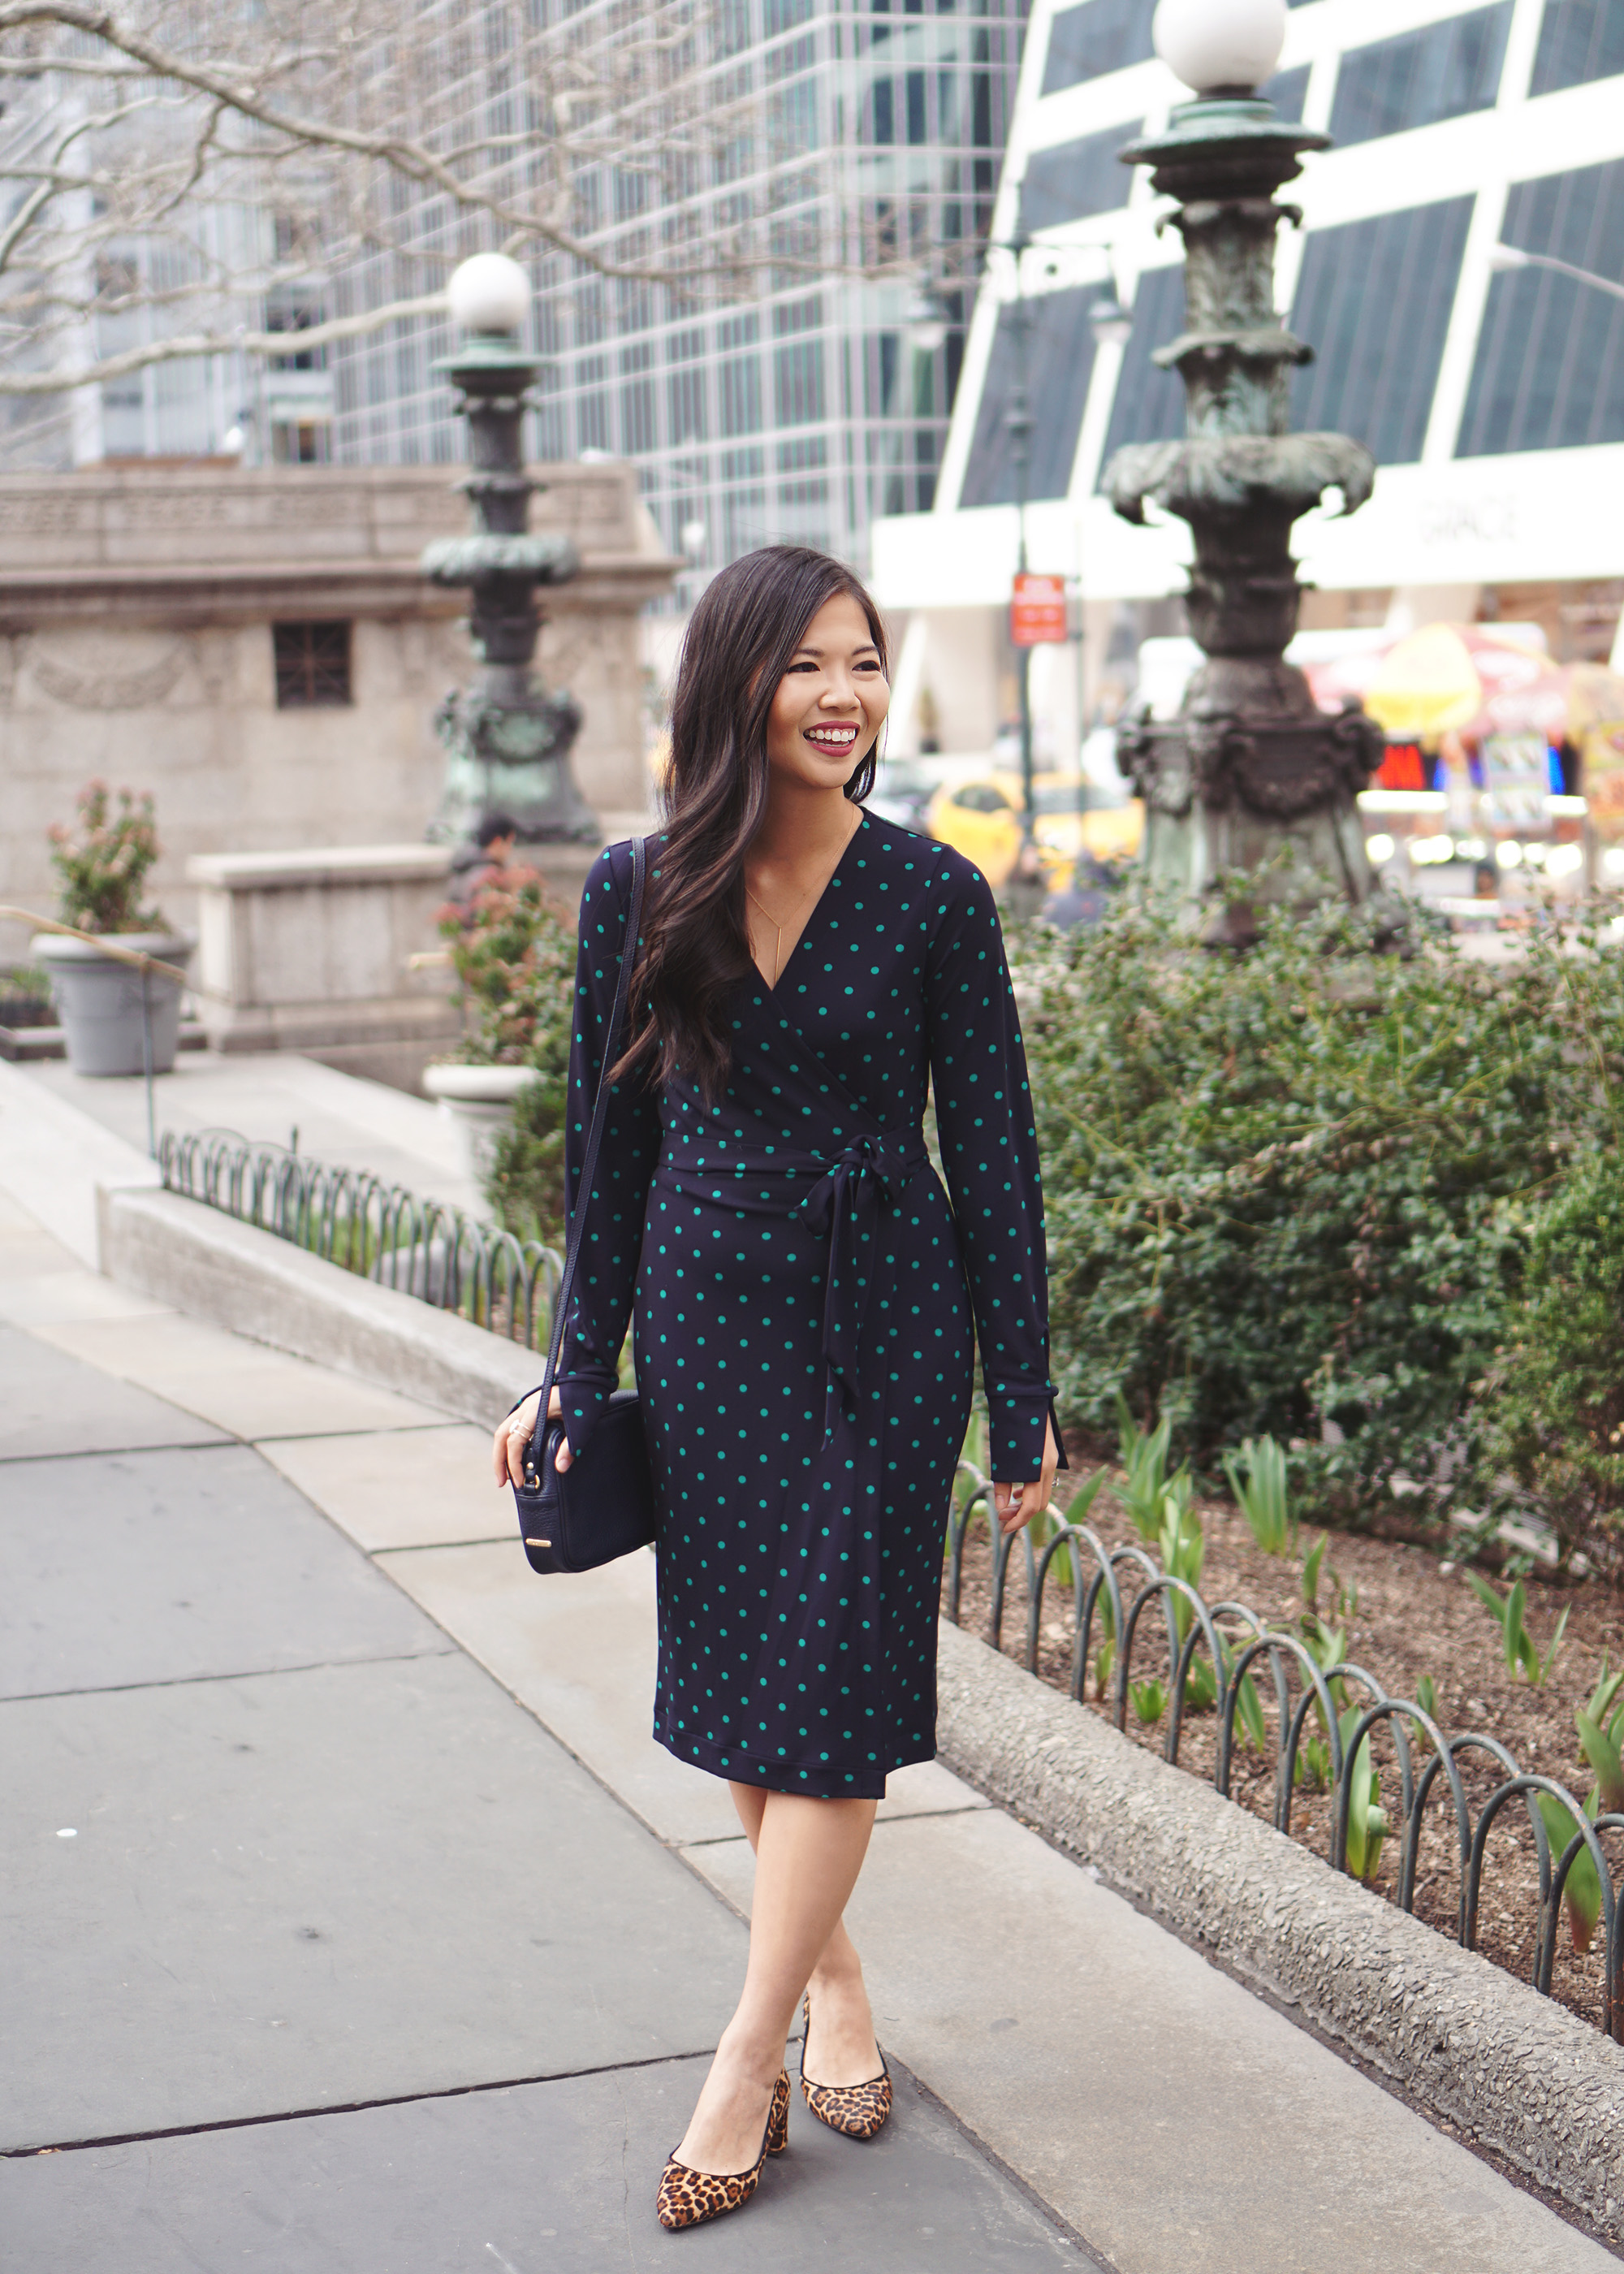 Office Style Inspiration: Polka Dot Wrap Dress